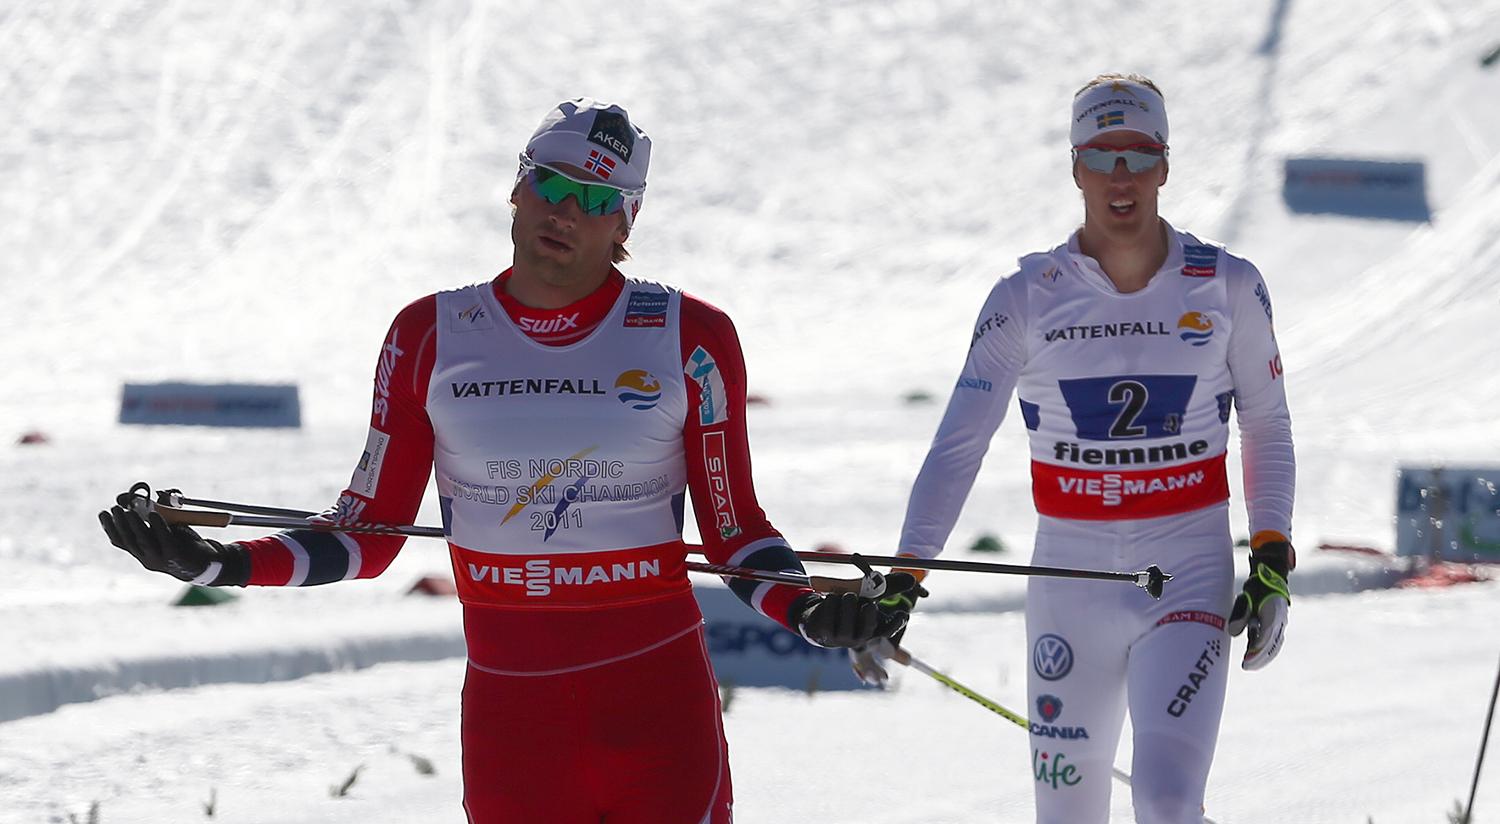 Så här – som in VM-stafetten i Val di Fiemme 2013, har det sett ut när Petter Northug och Calle Halfvarsson möts i spurtdueller.